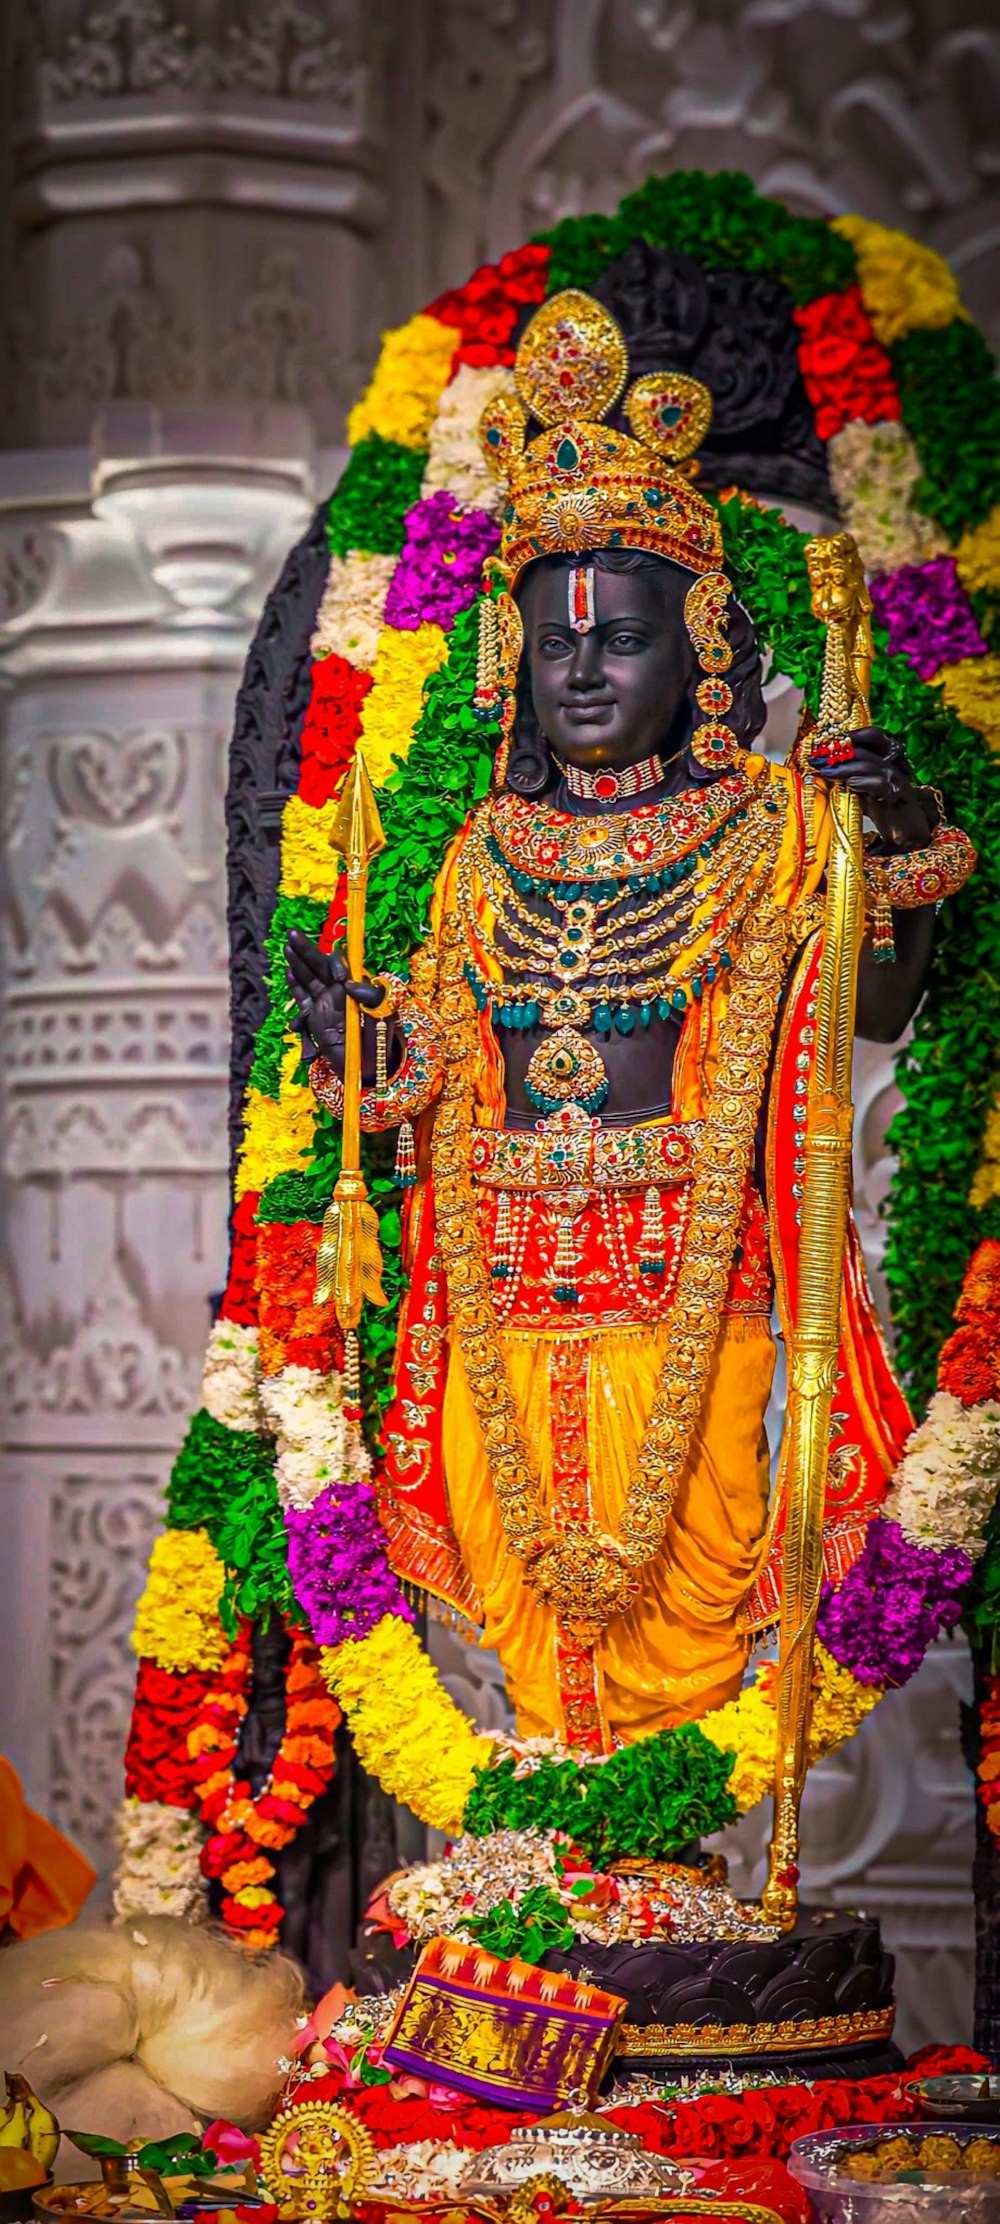 Une statue d’un dieu hindou entourée de fleurs